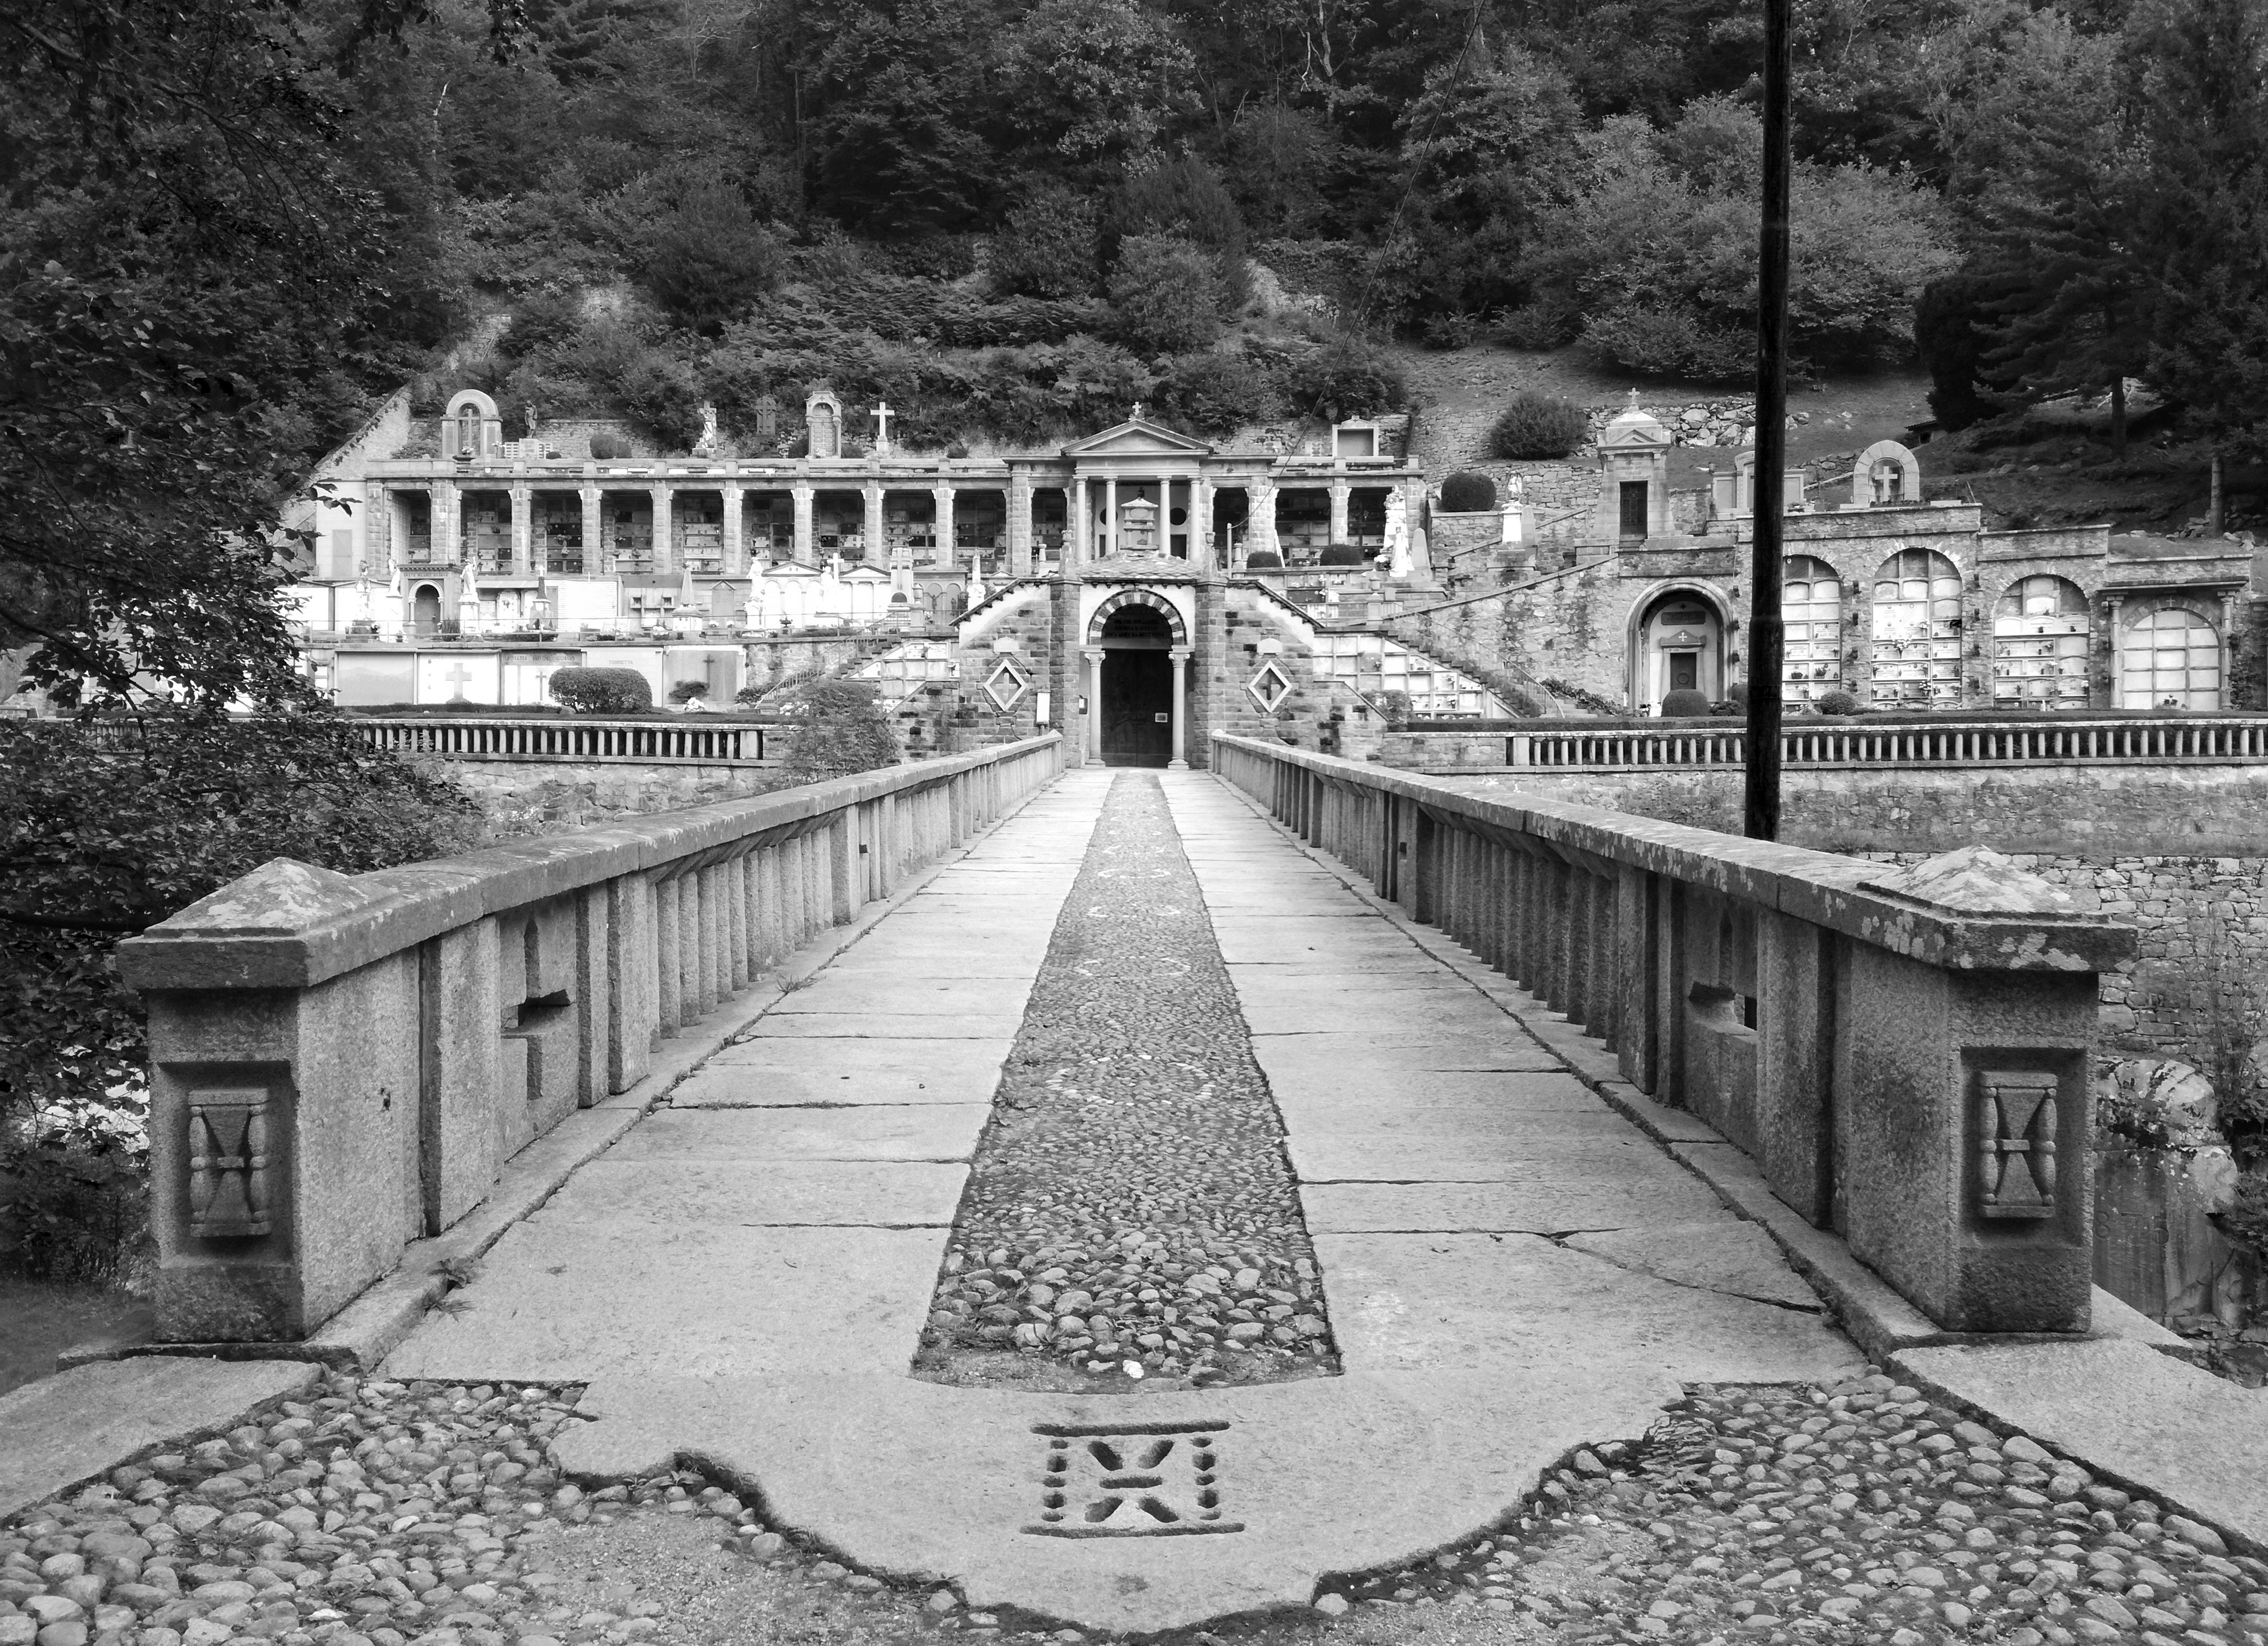 il ponte a tre arcate che porta al cimitero, decorato con clessidre.jpg